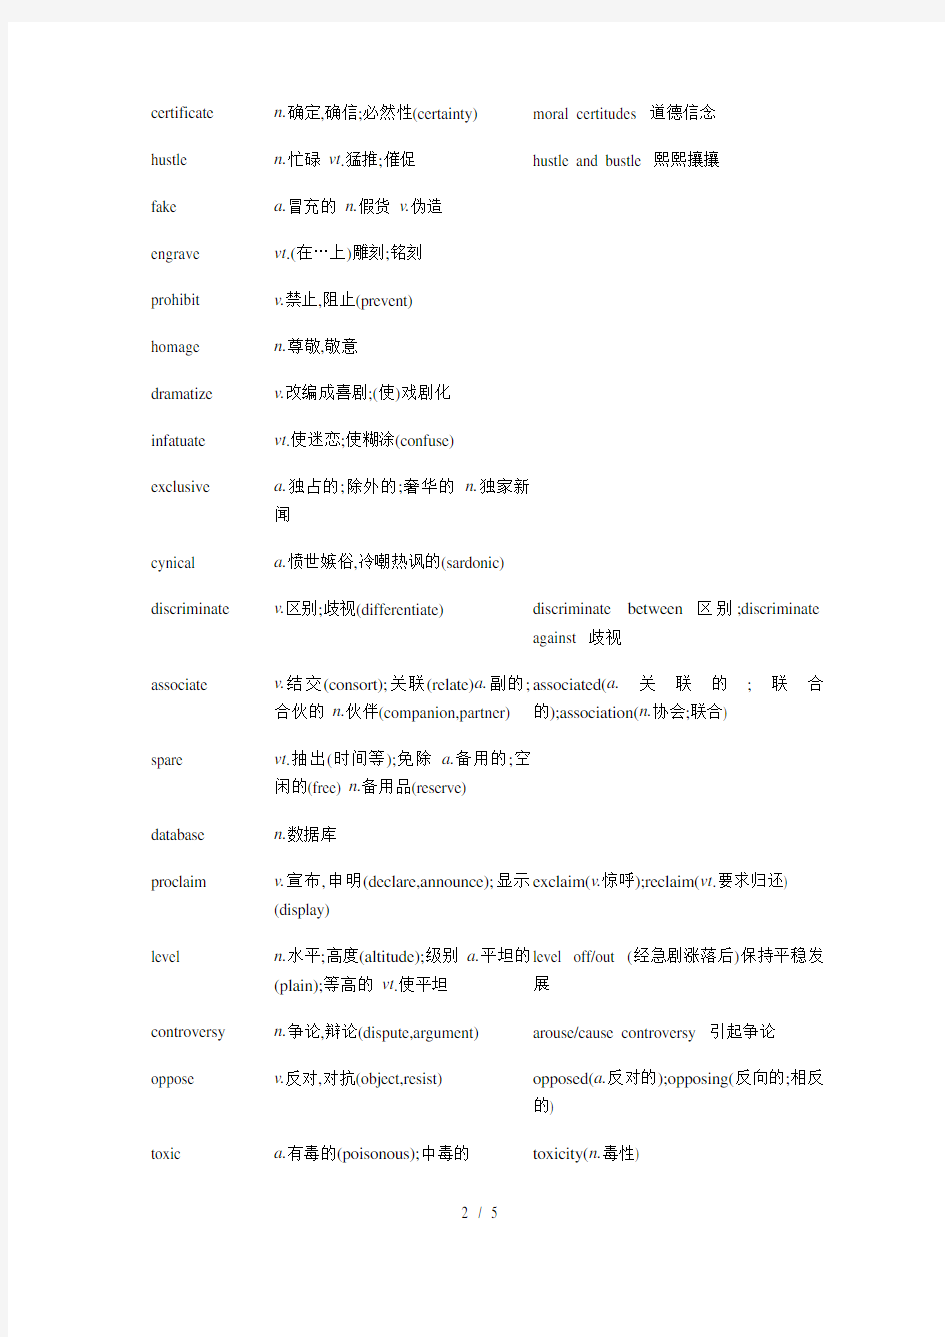 新东方托福词汇乱序版 List 2(详细版)